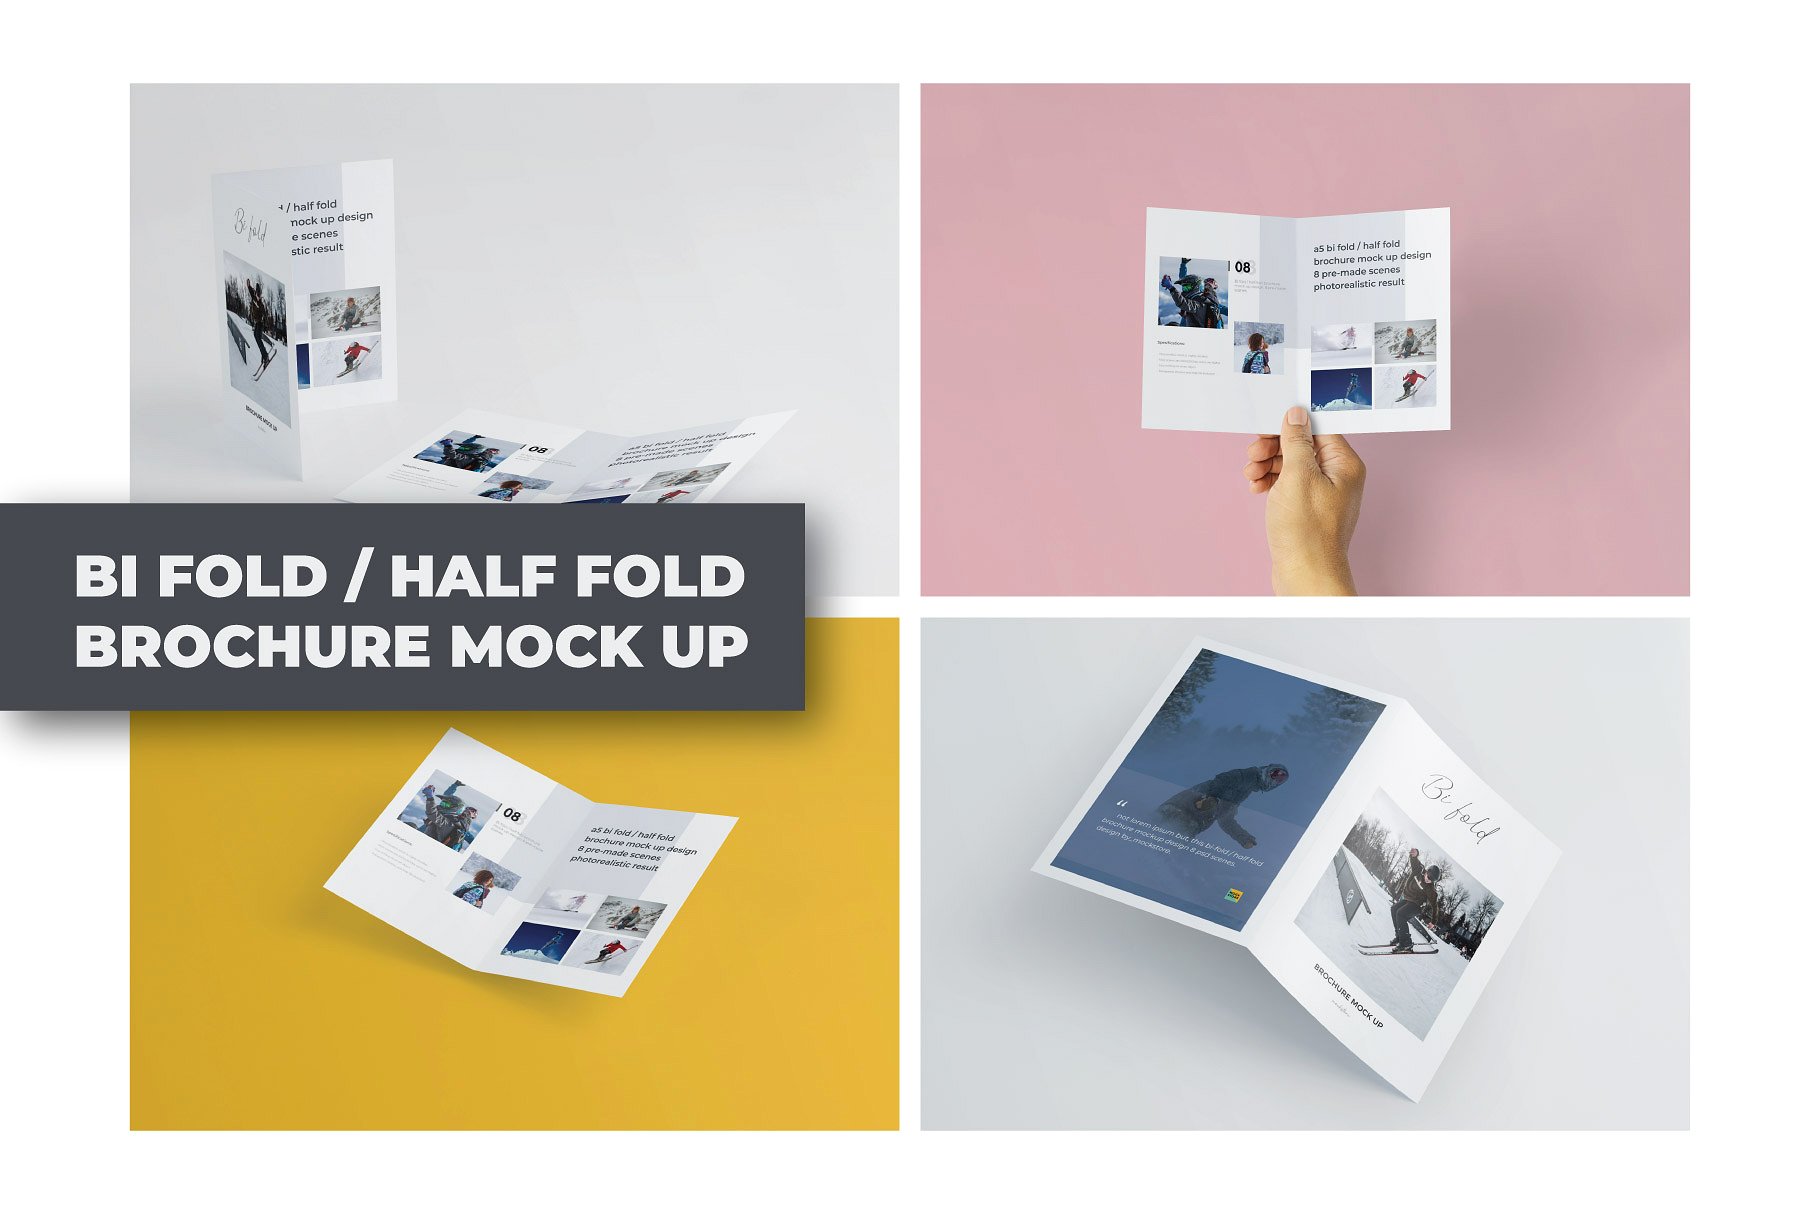 精装画册杂志设计提案展示样机PSD智能贴图模板 A5 Bifold Half-Fold Brochure Mockup插图